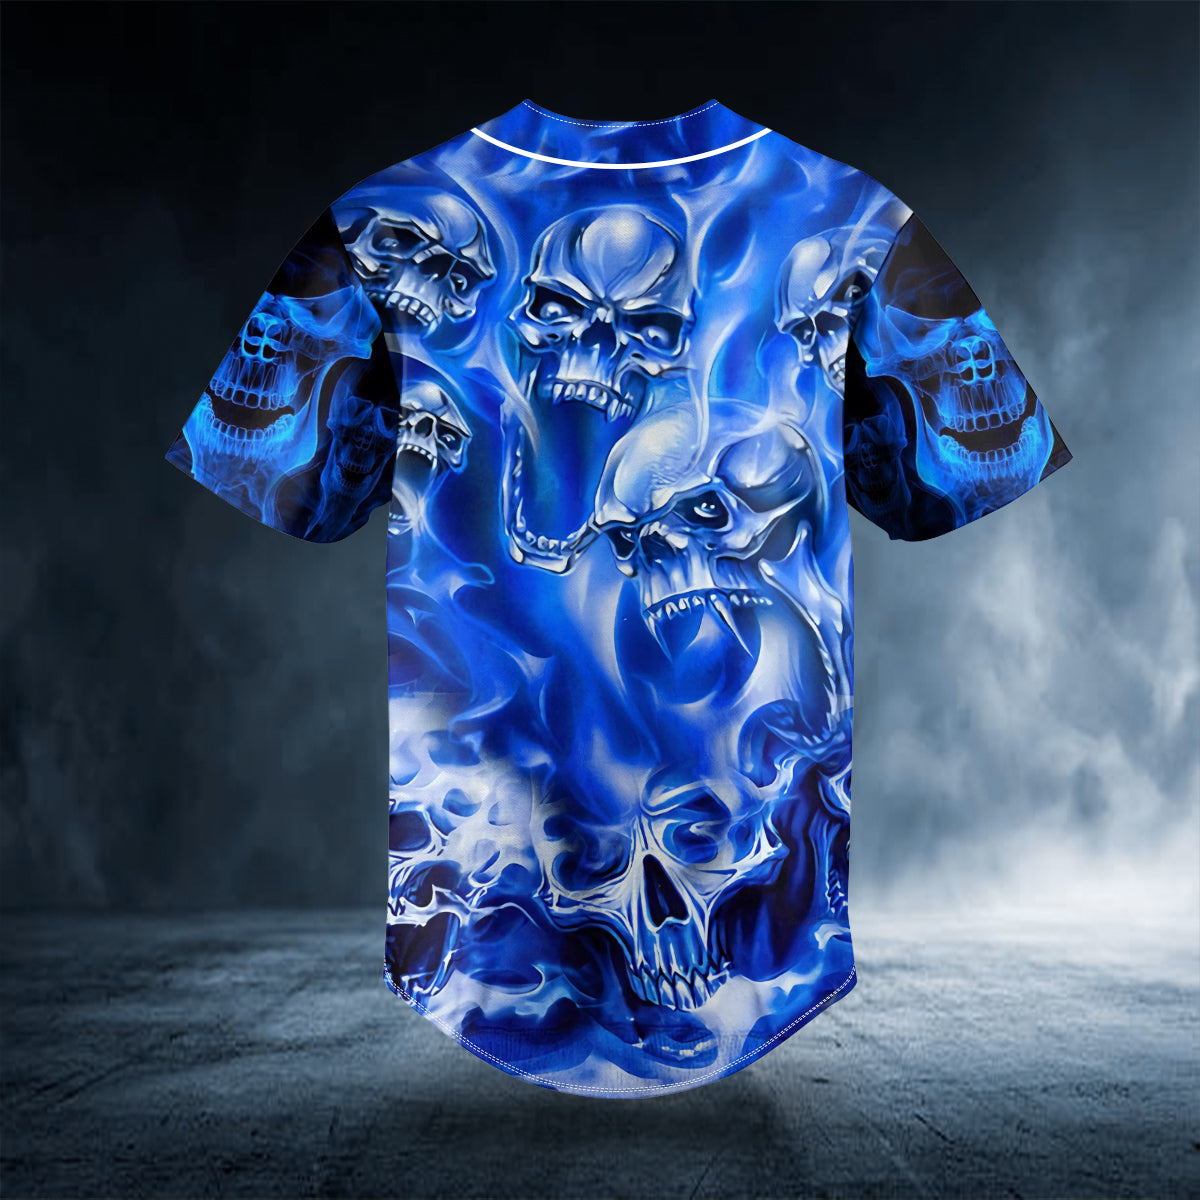 blue soul eater ghost skull custom baseball jersey bsj 504 tqj2b